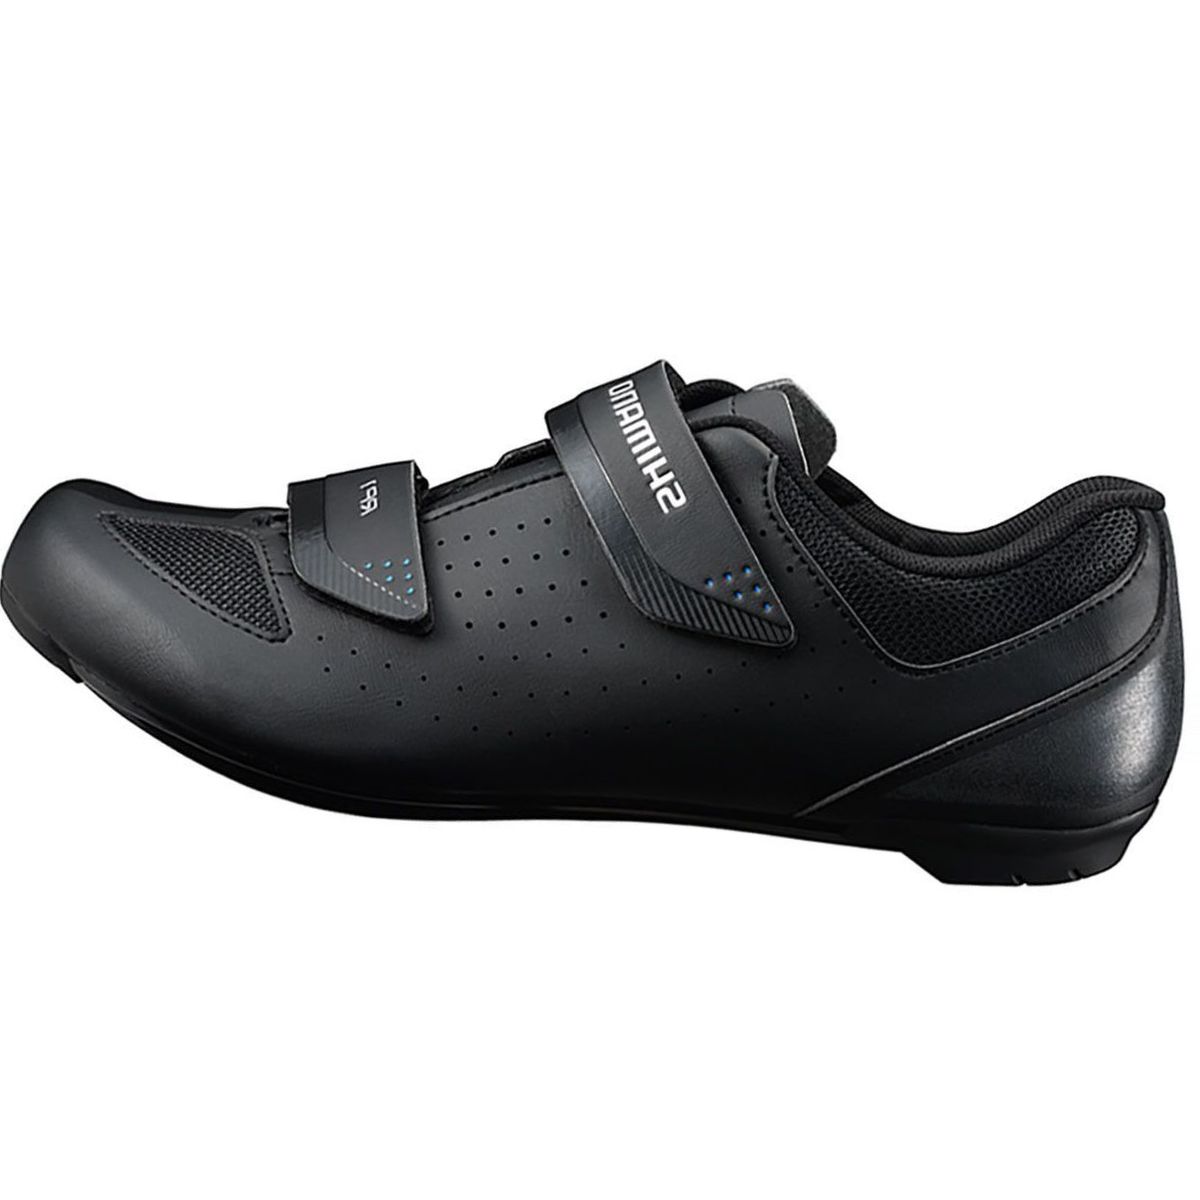 Shimano SH-RP1 Cycling Shoe - Men's